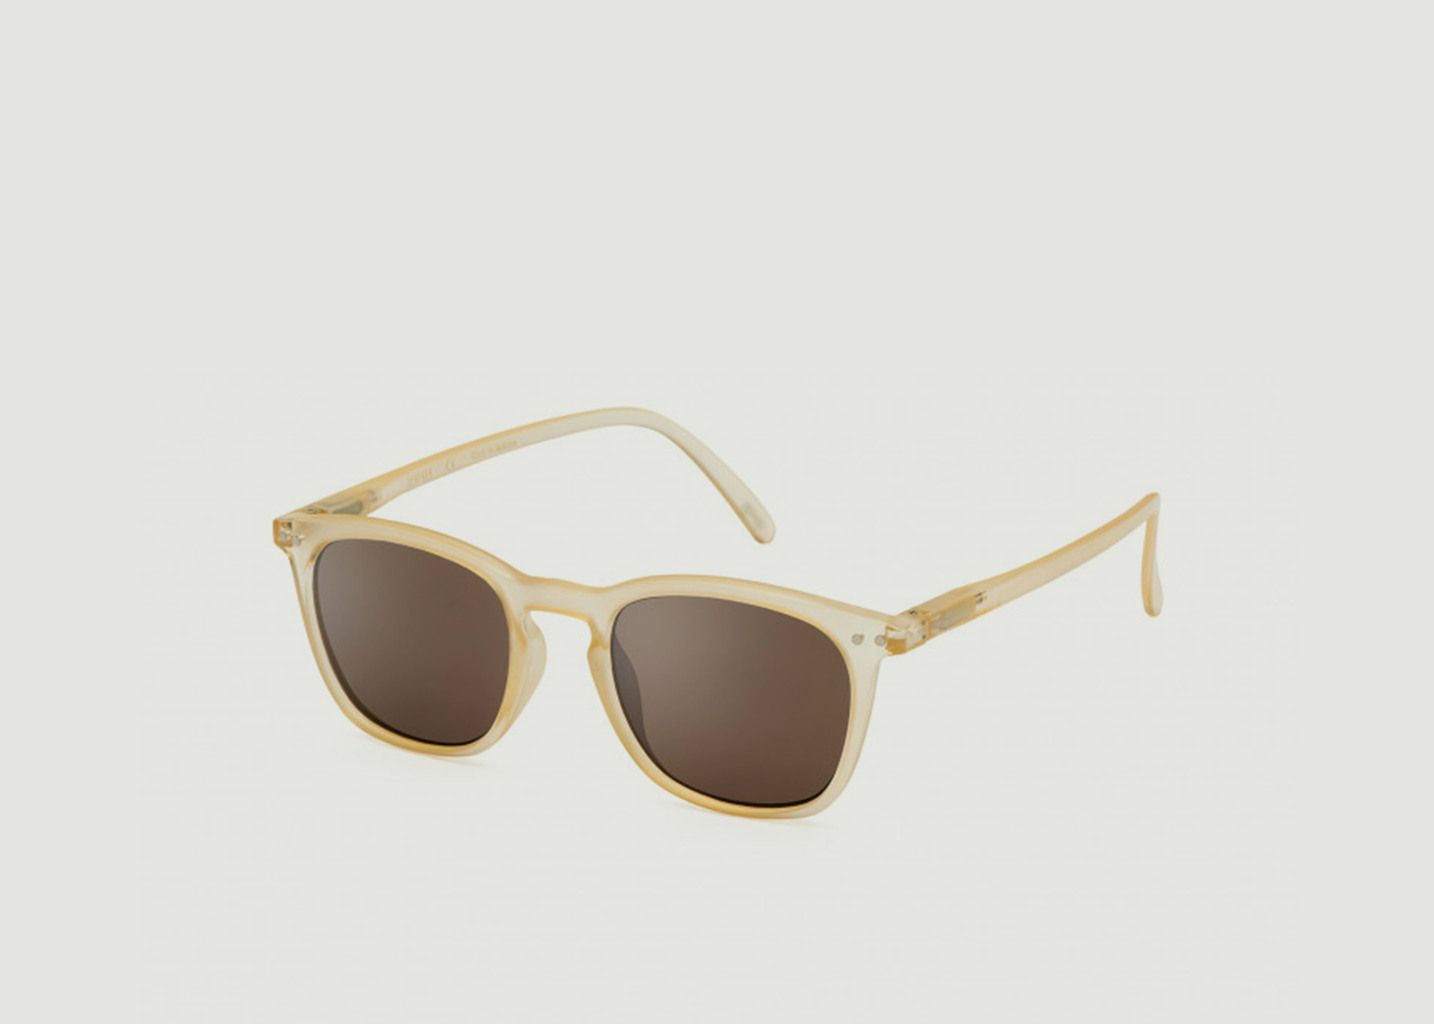 Sunglasses #E SUN Fool's Gold - Izipizi